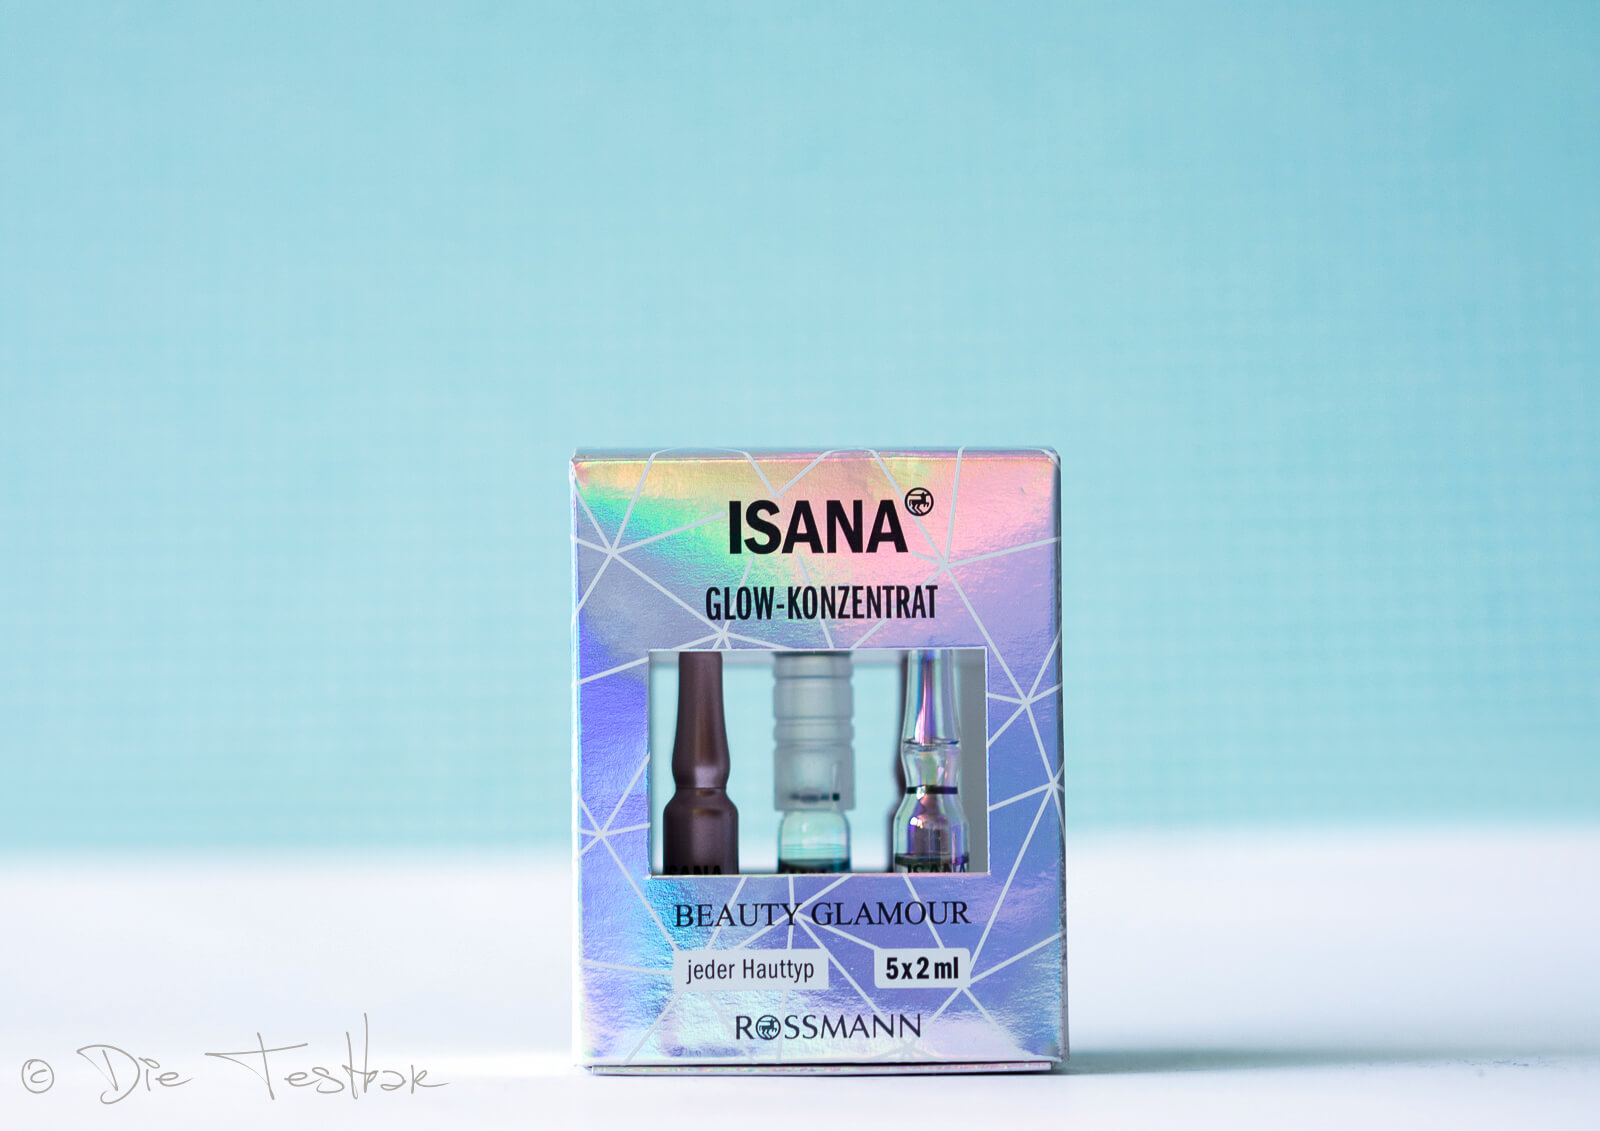 ISANA - Glow Konzentrat Beauty Glamour